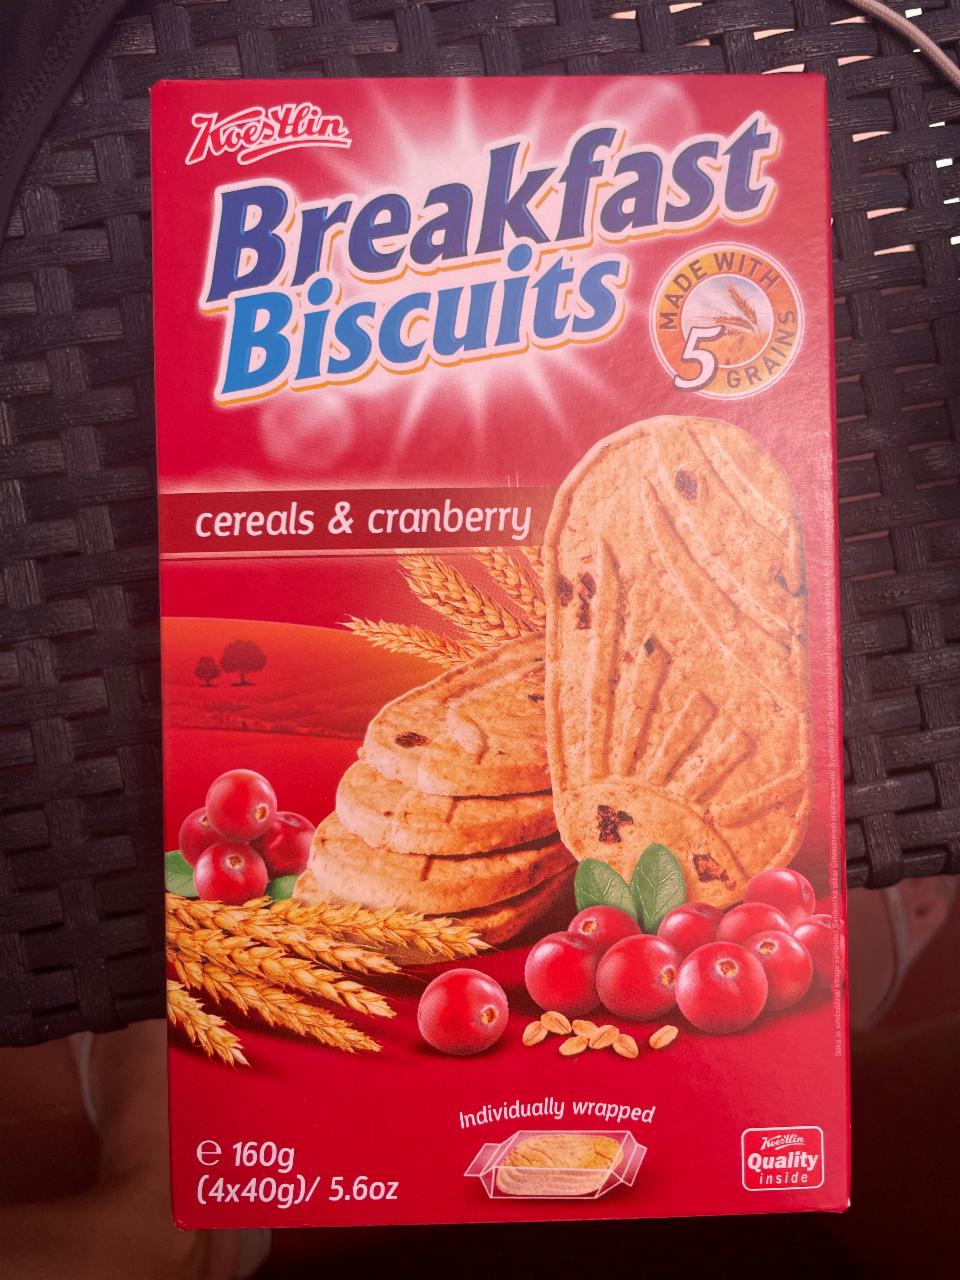 Fotografie - Breakfast Biscuits cereals & cranberry Kvestlin